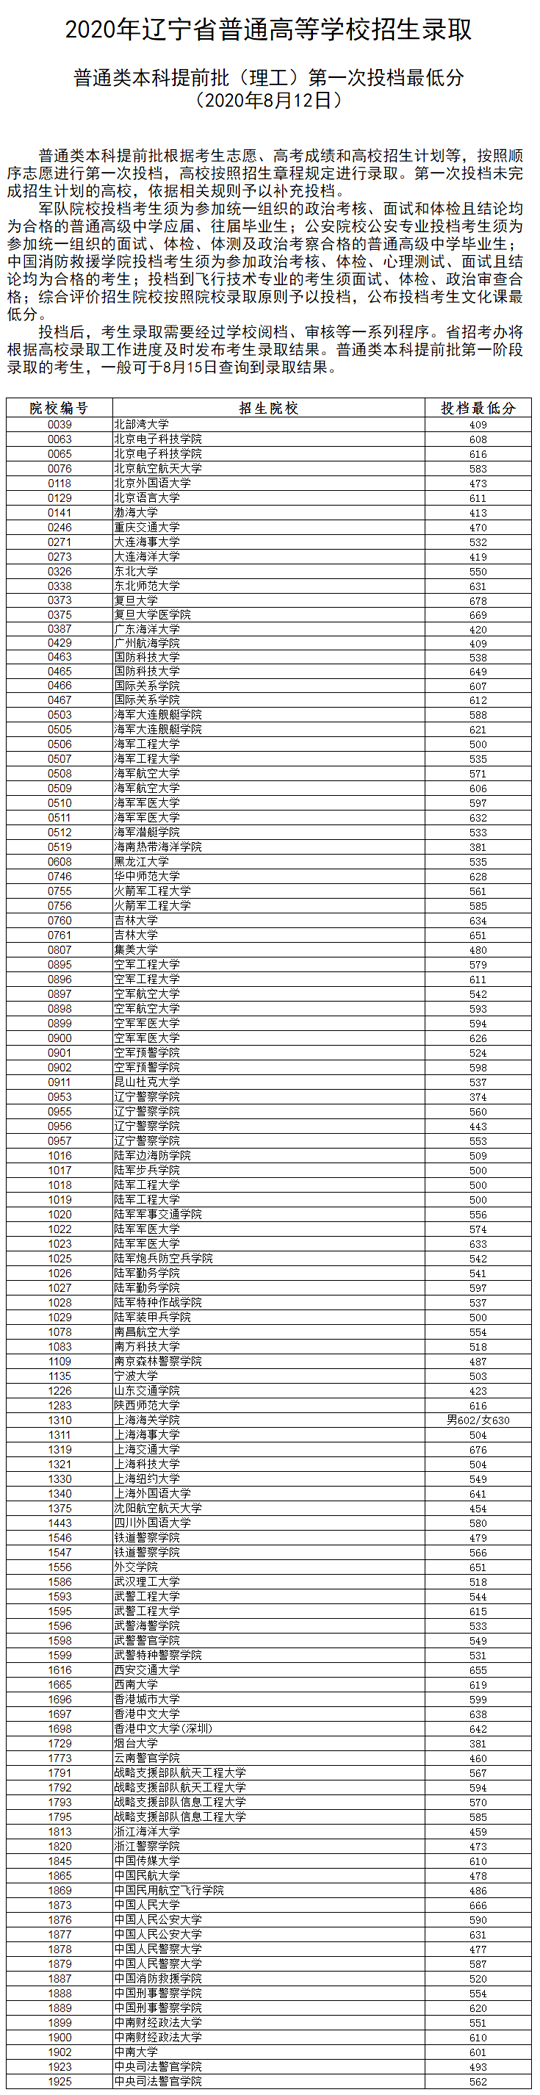 提醒 | 2020年辽宁省普通高等学校招生录取普通类本科提前批第一次投